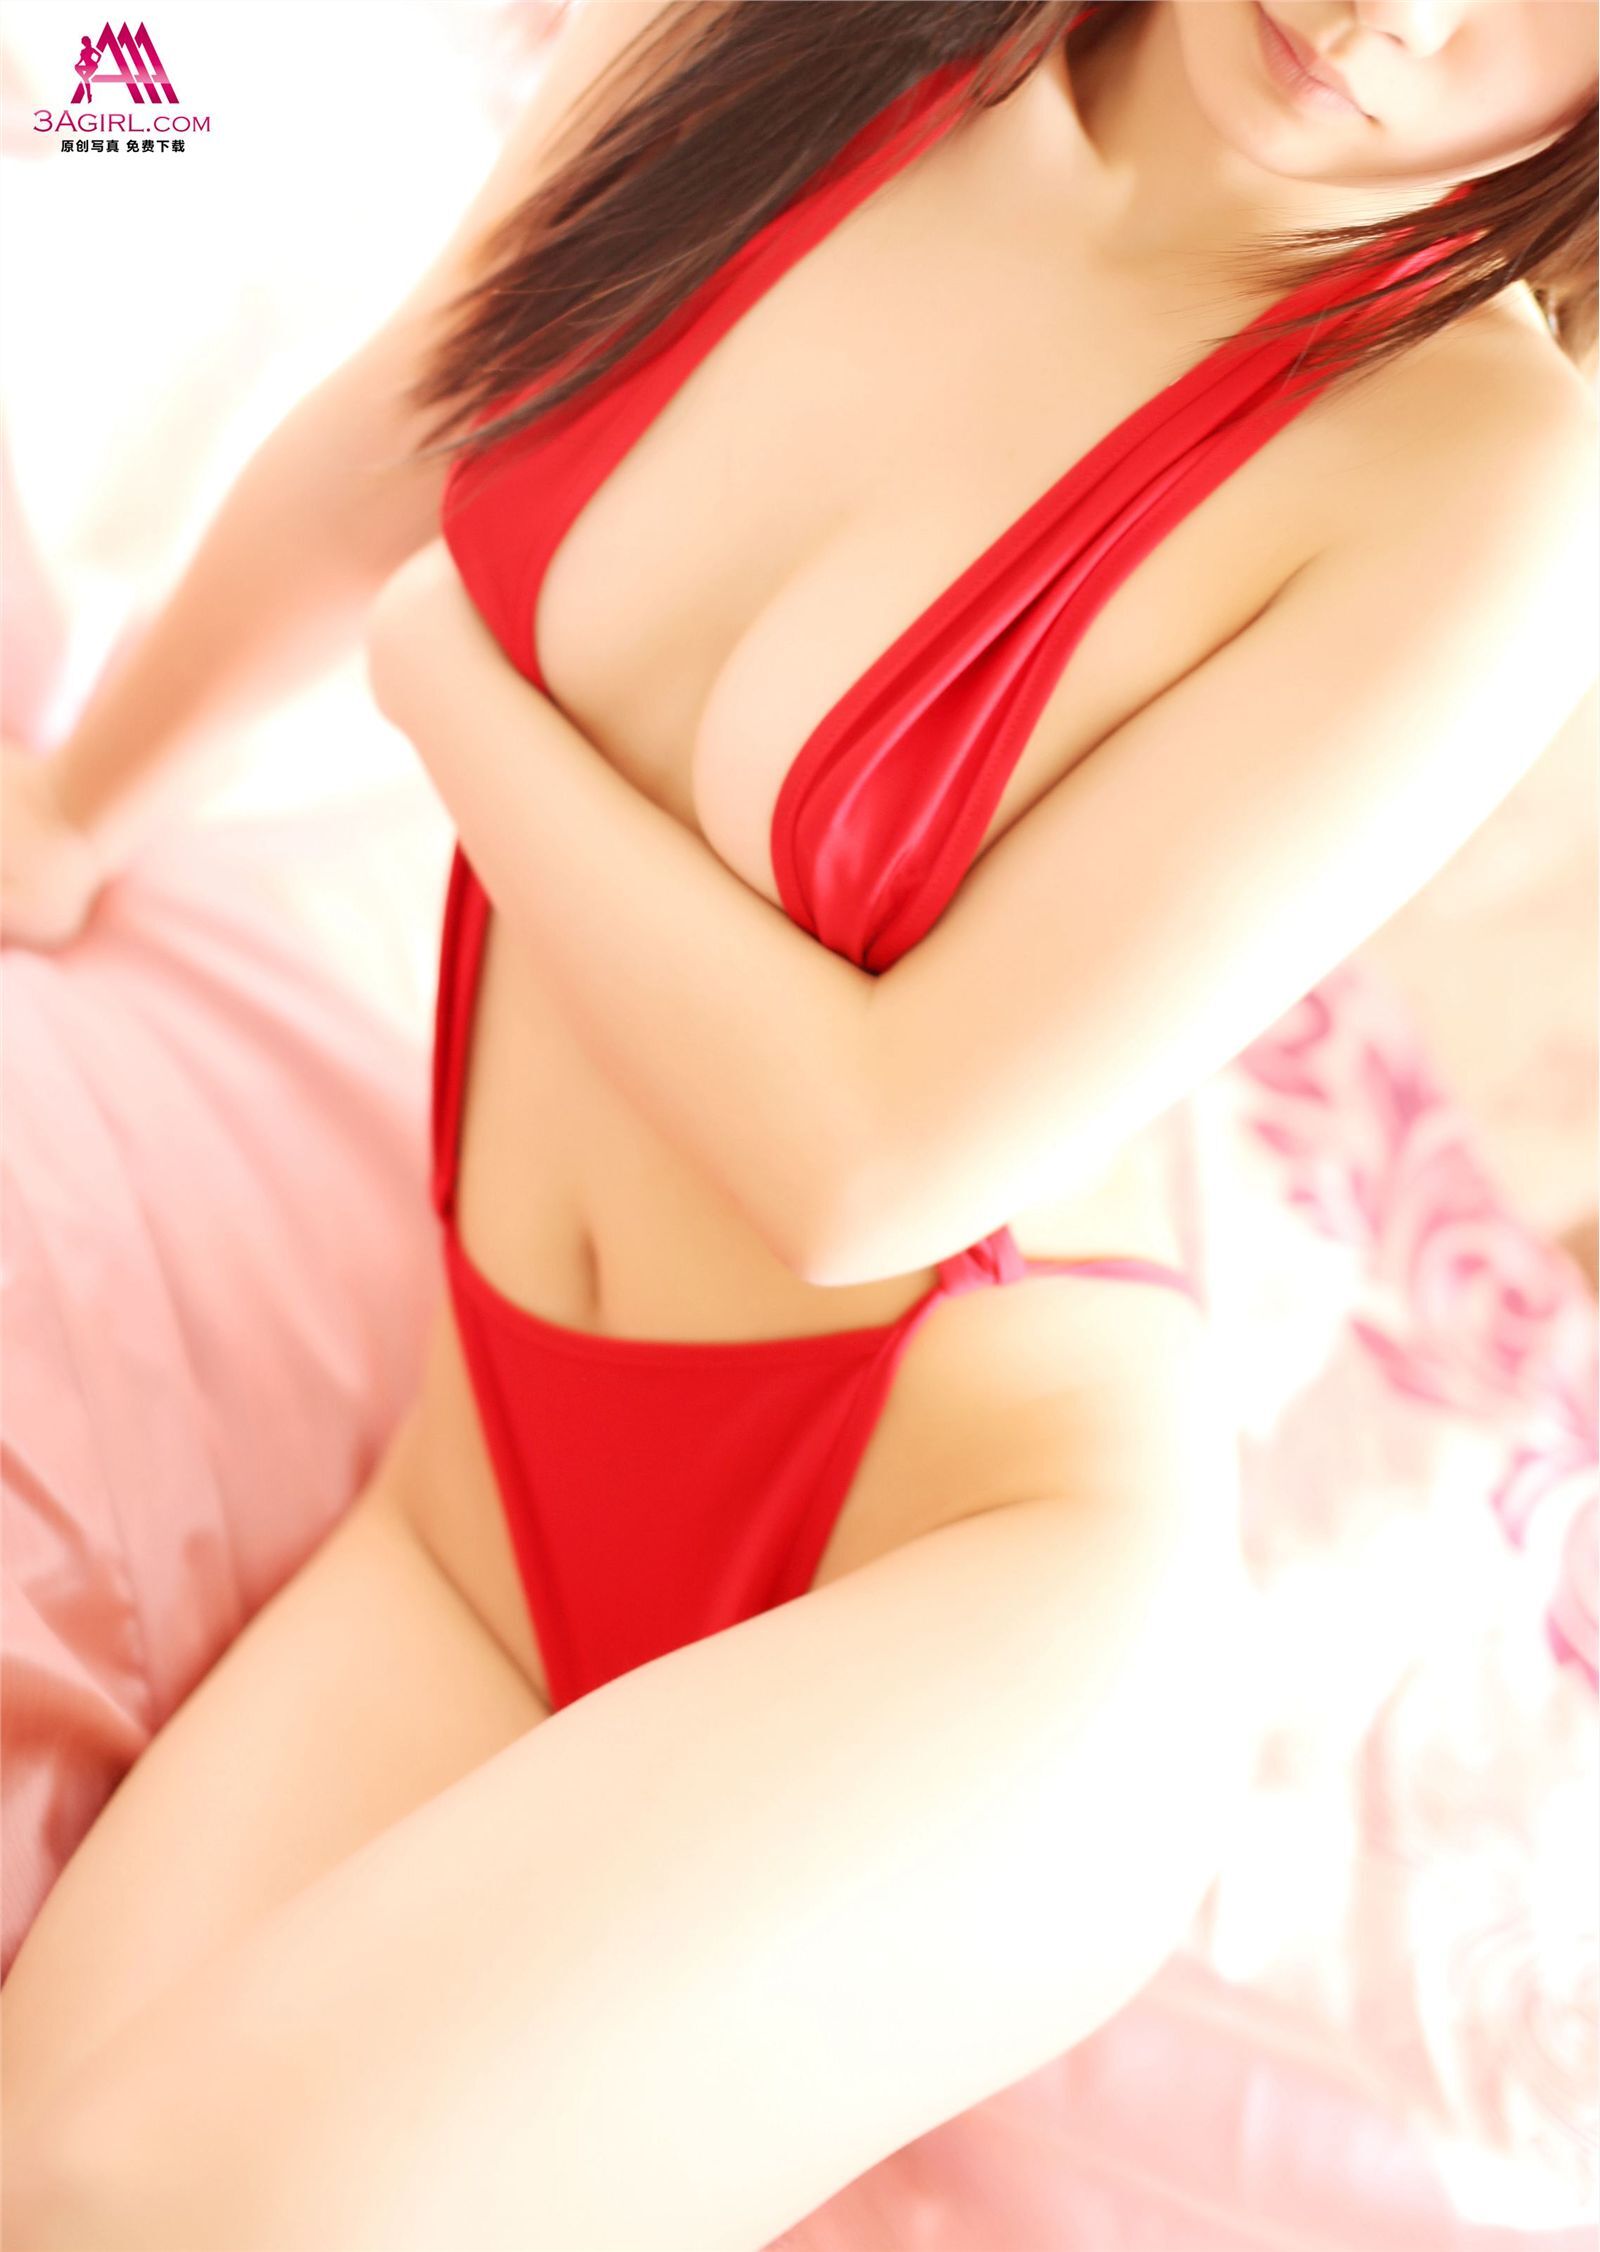 [3agirl] 2014.04.06 AAA girl No.241 Yuji breast beauty (2): meisui